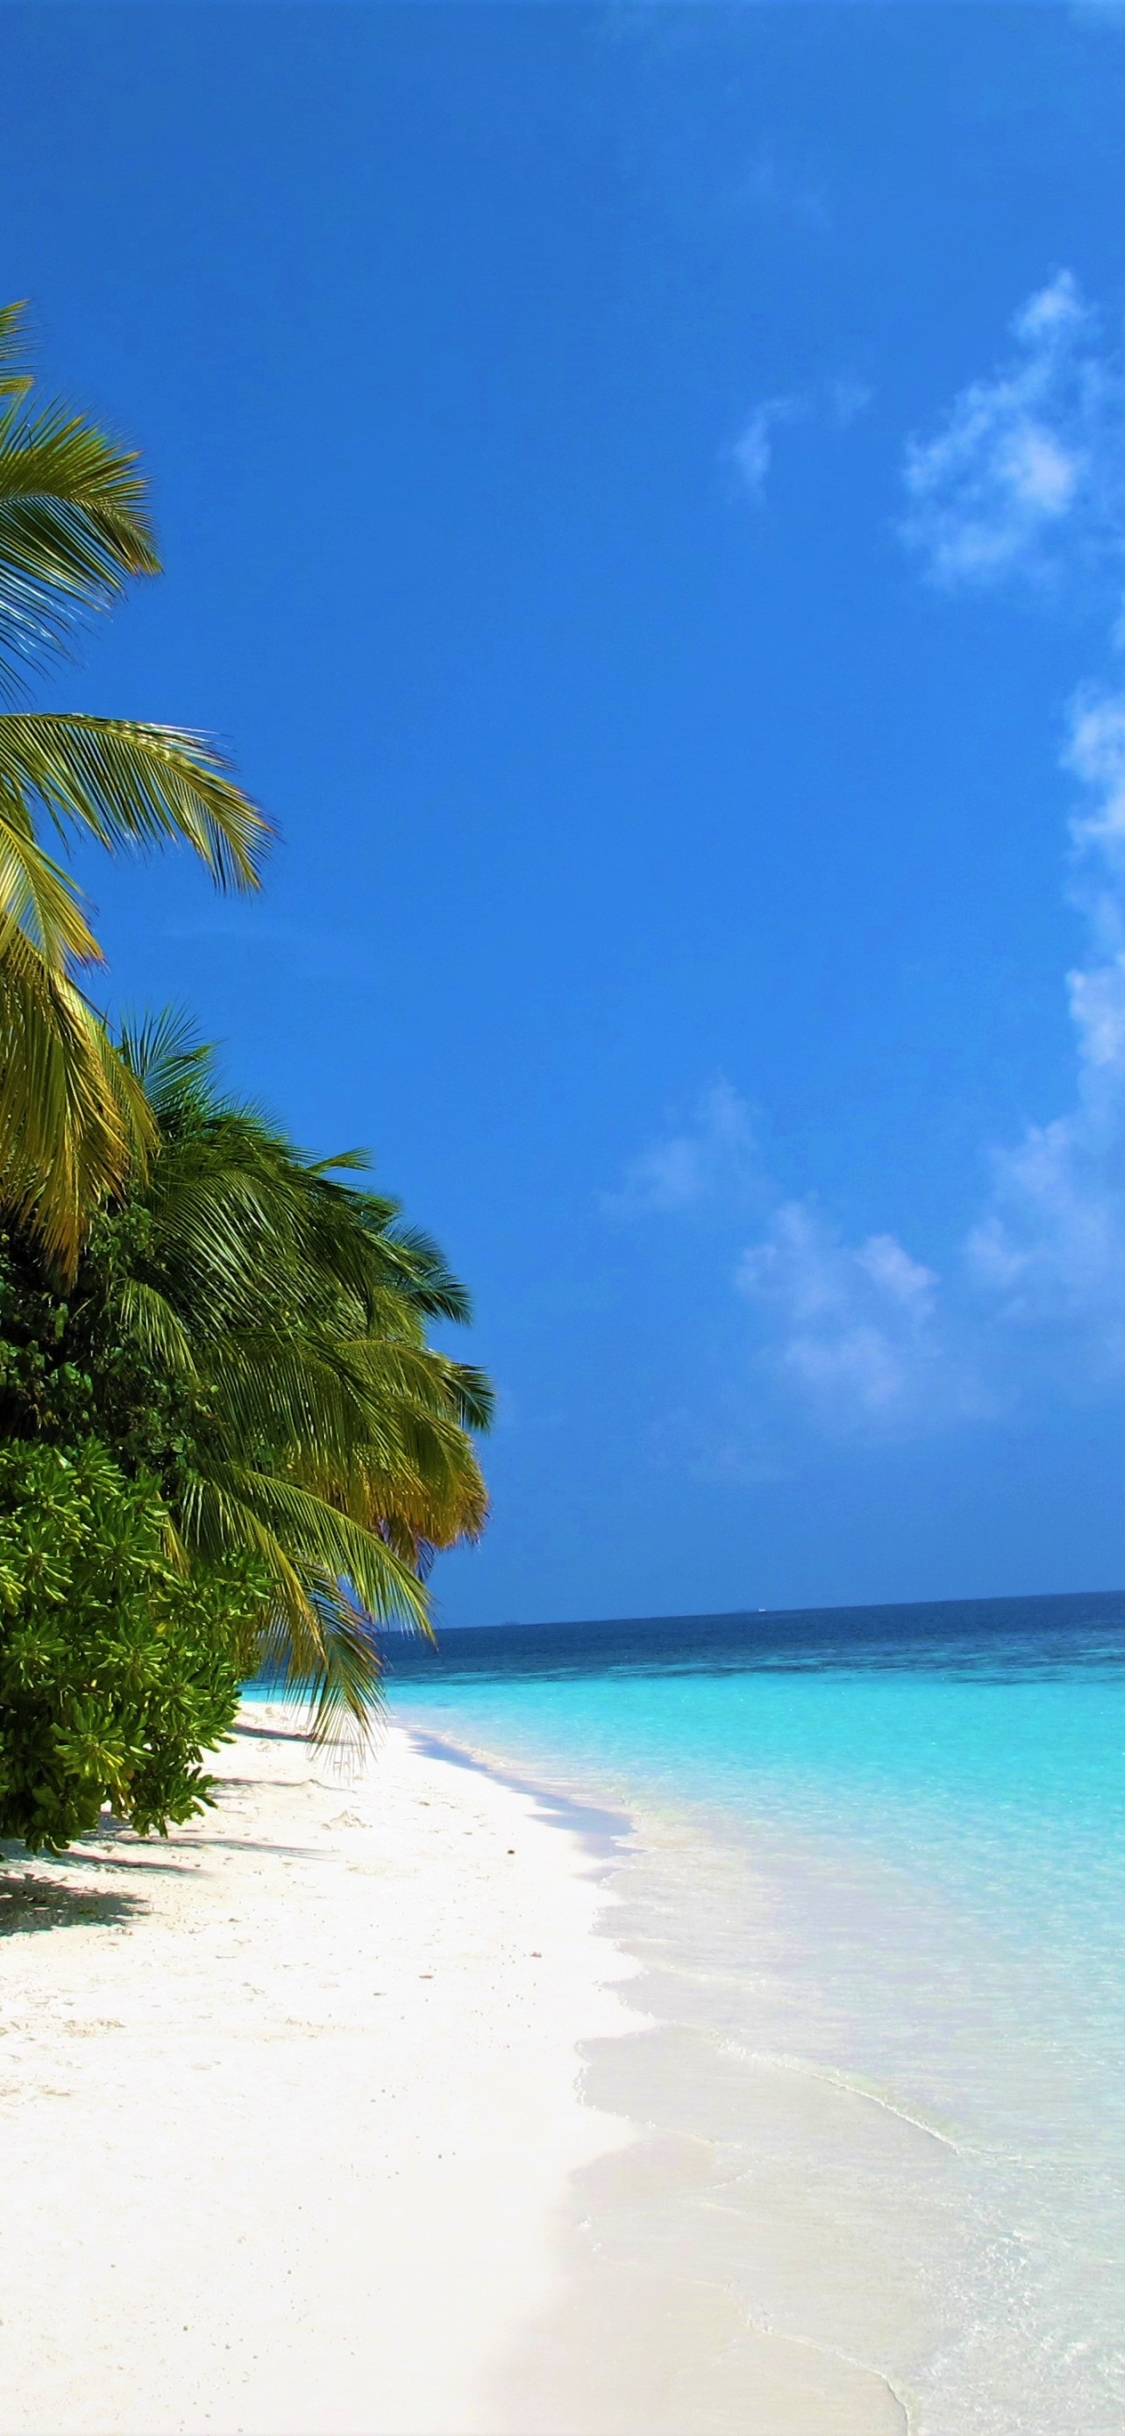 Descarga gratuita de fondo de pantalla para móvil de Mar, Playa, Océano, Tierra, Tropical, Maldivas, Tierra/naturaleza, Palmera, Tropico.